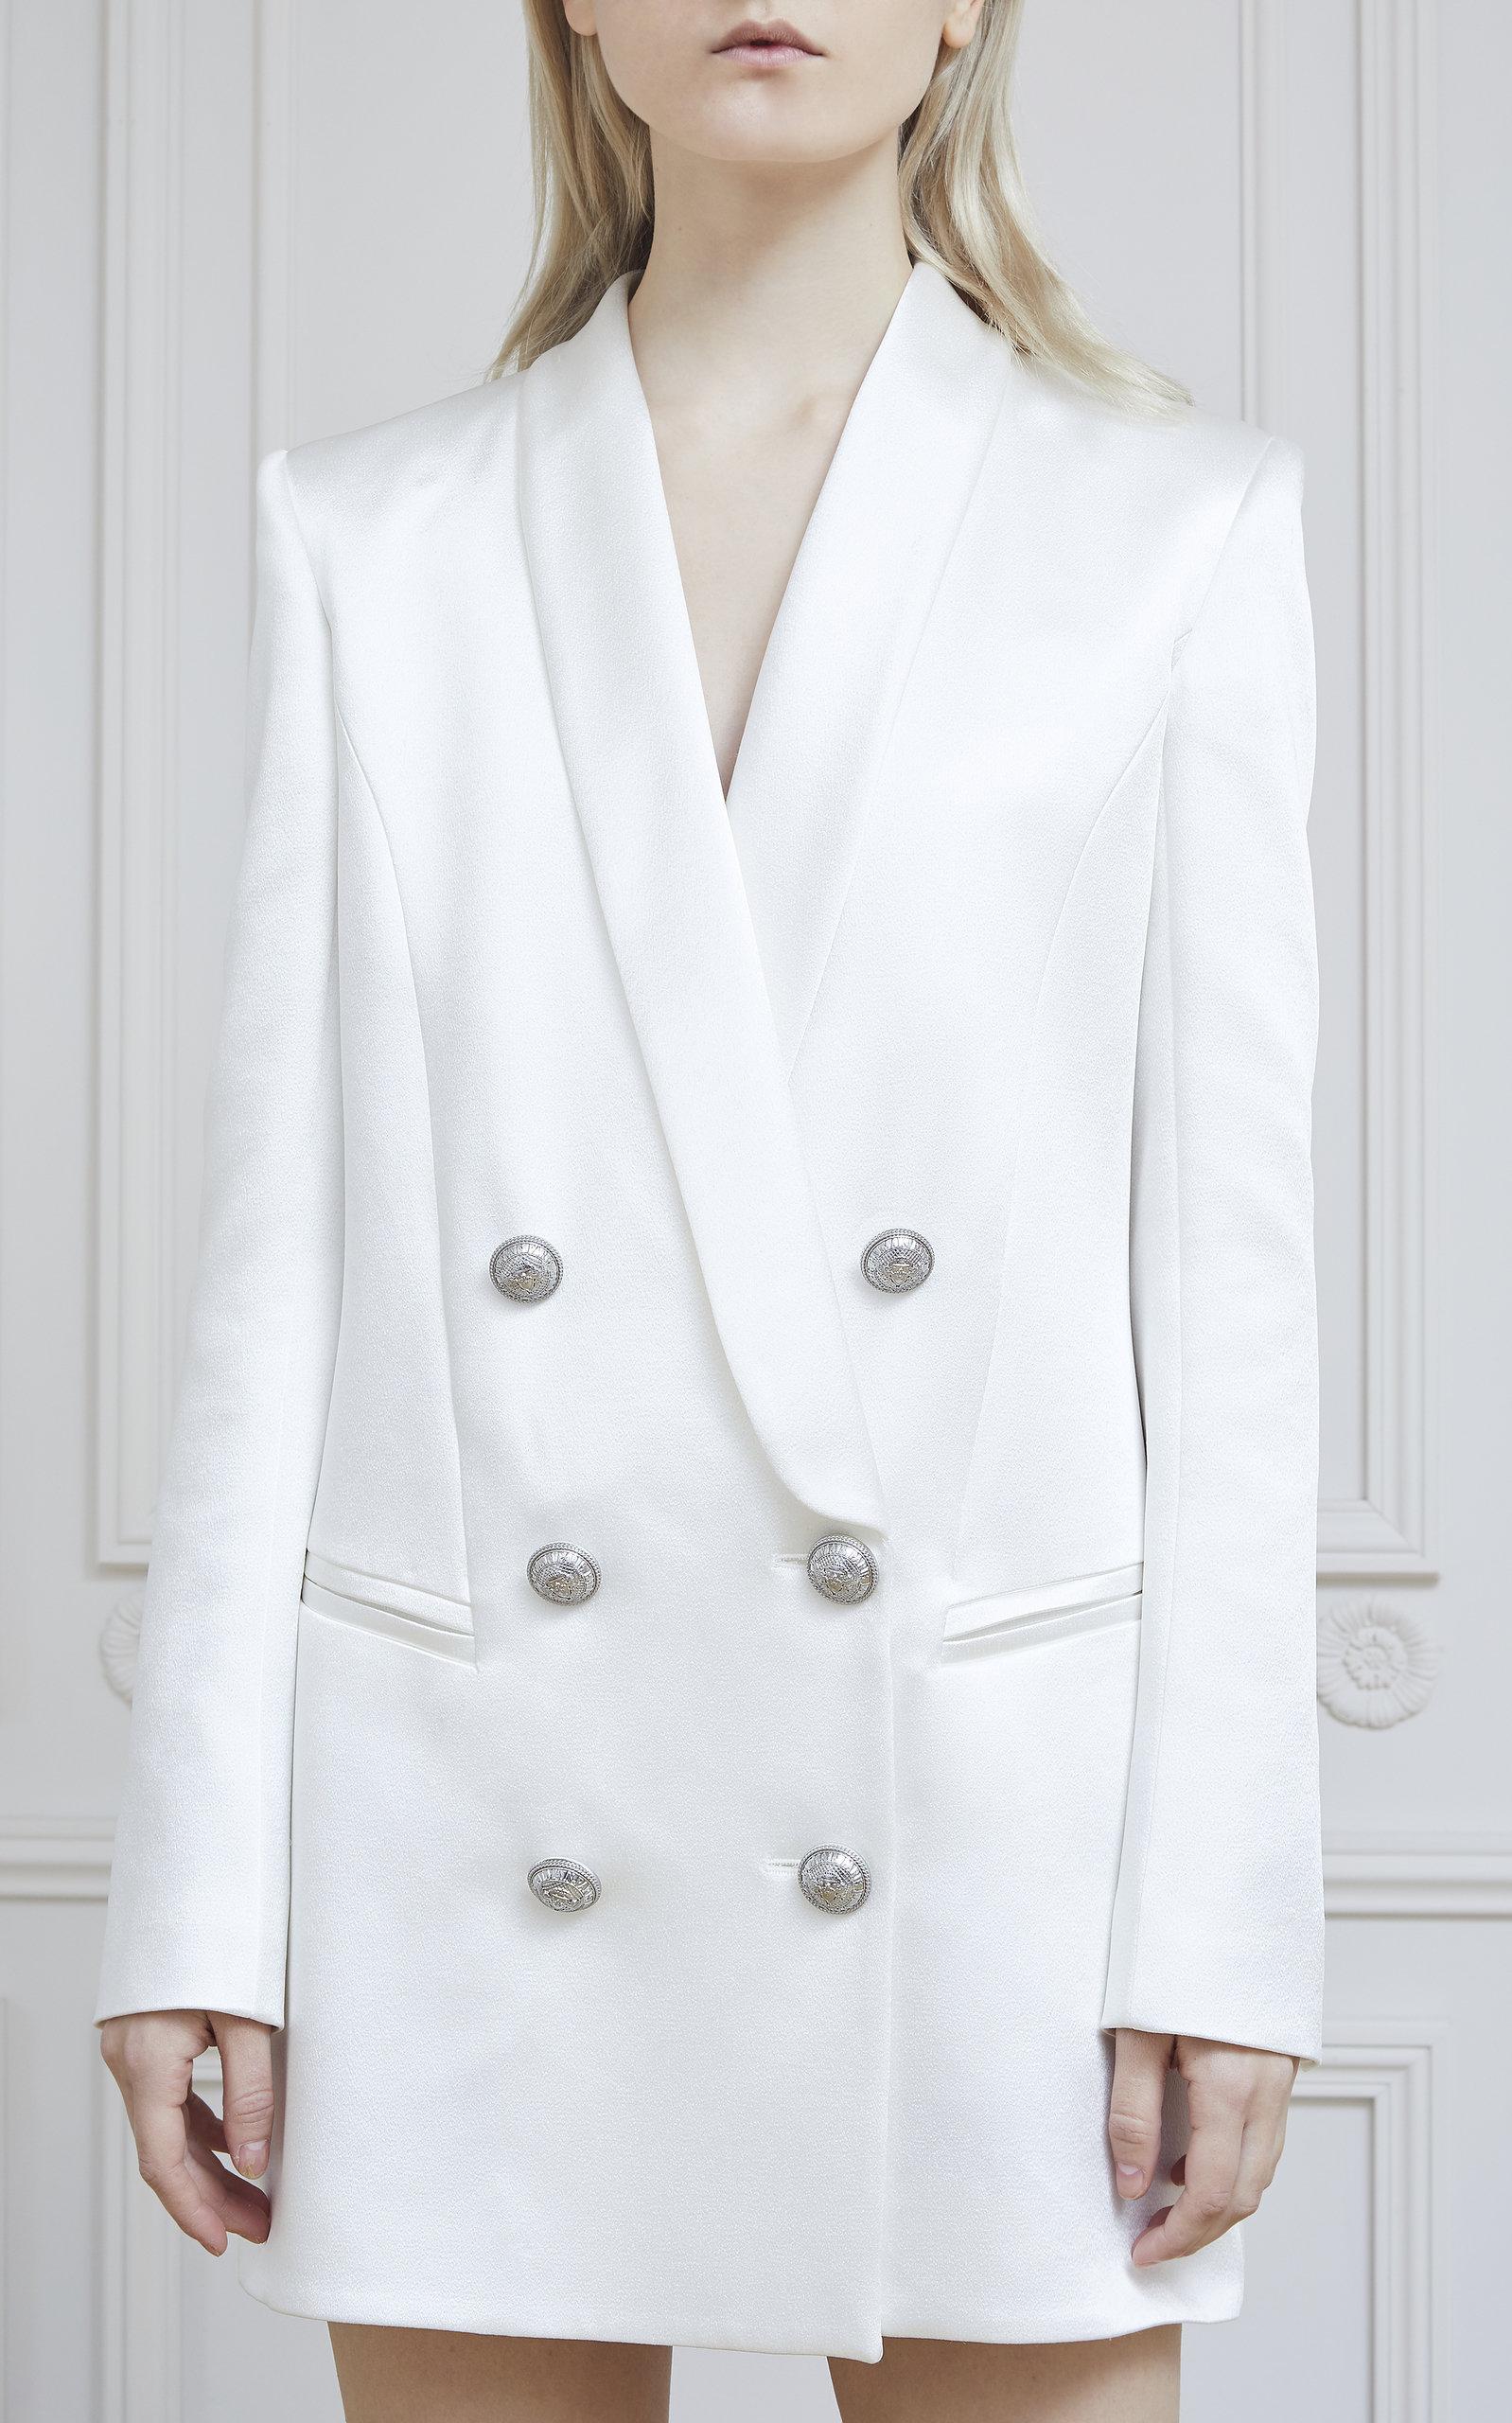 balmain hvit blazer kjole on sale 9bedd 658b7